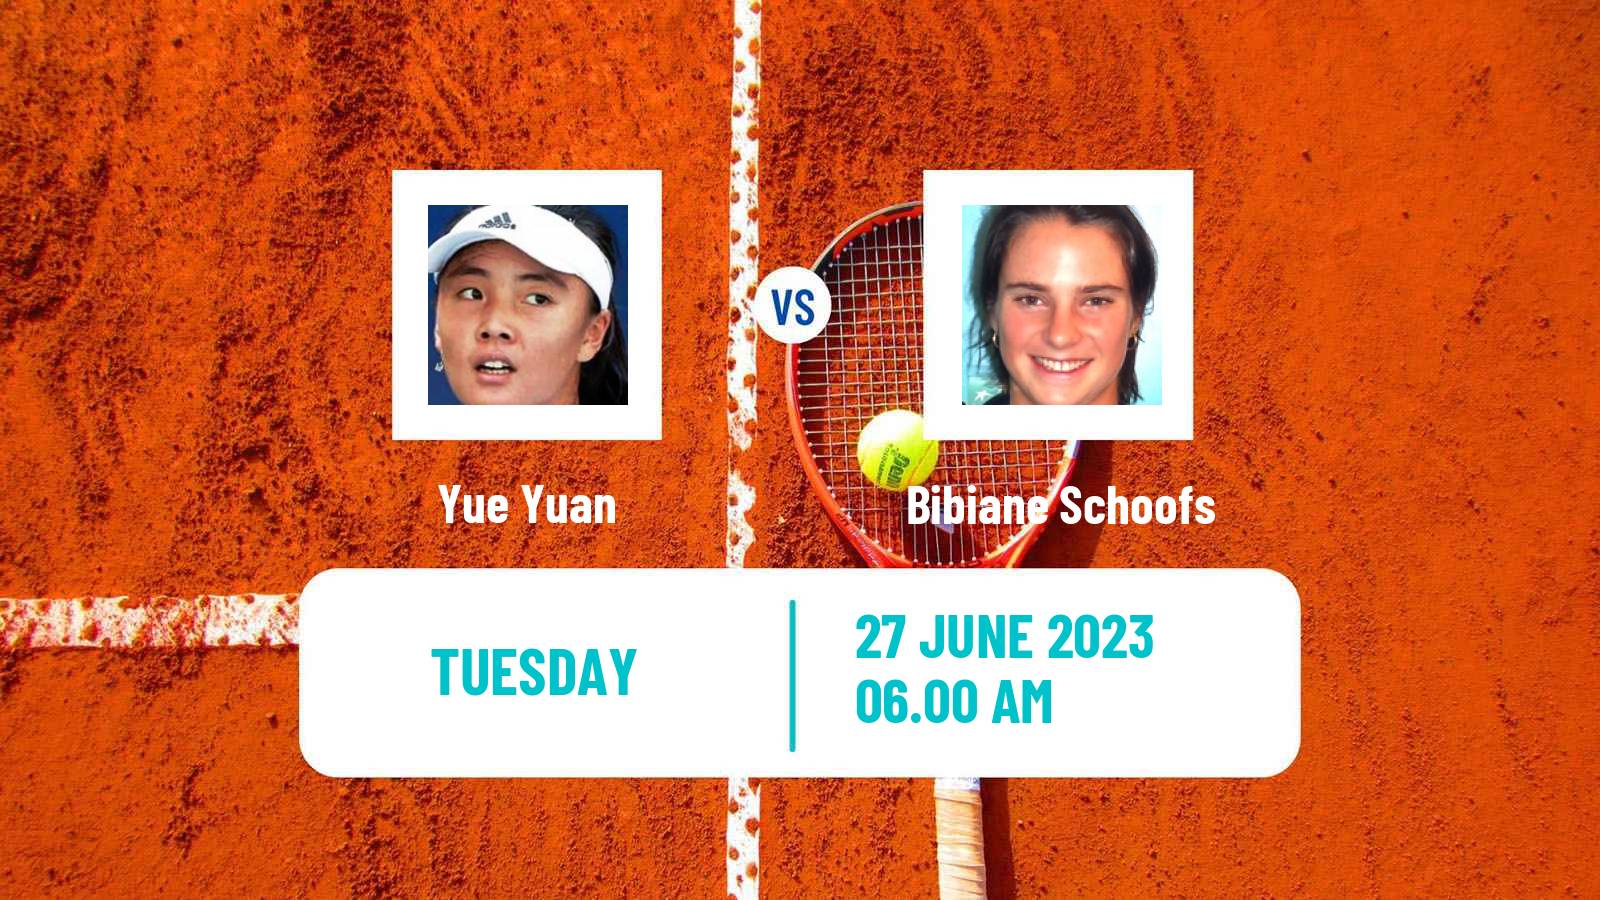 Tennis WTA Wimbledon Yue Yuan - Bibiane Schoofs